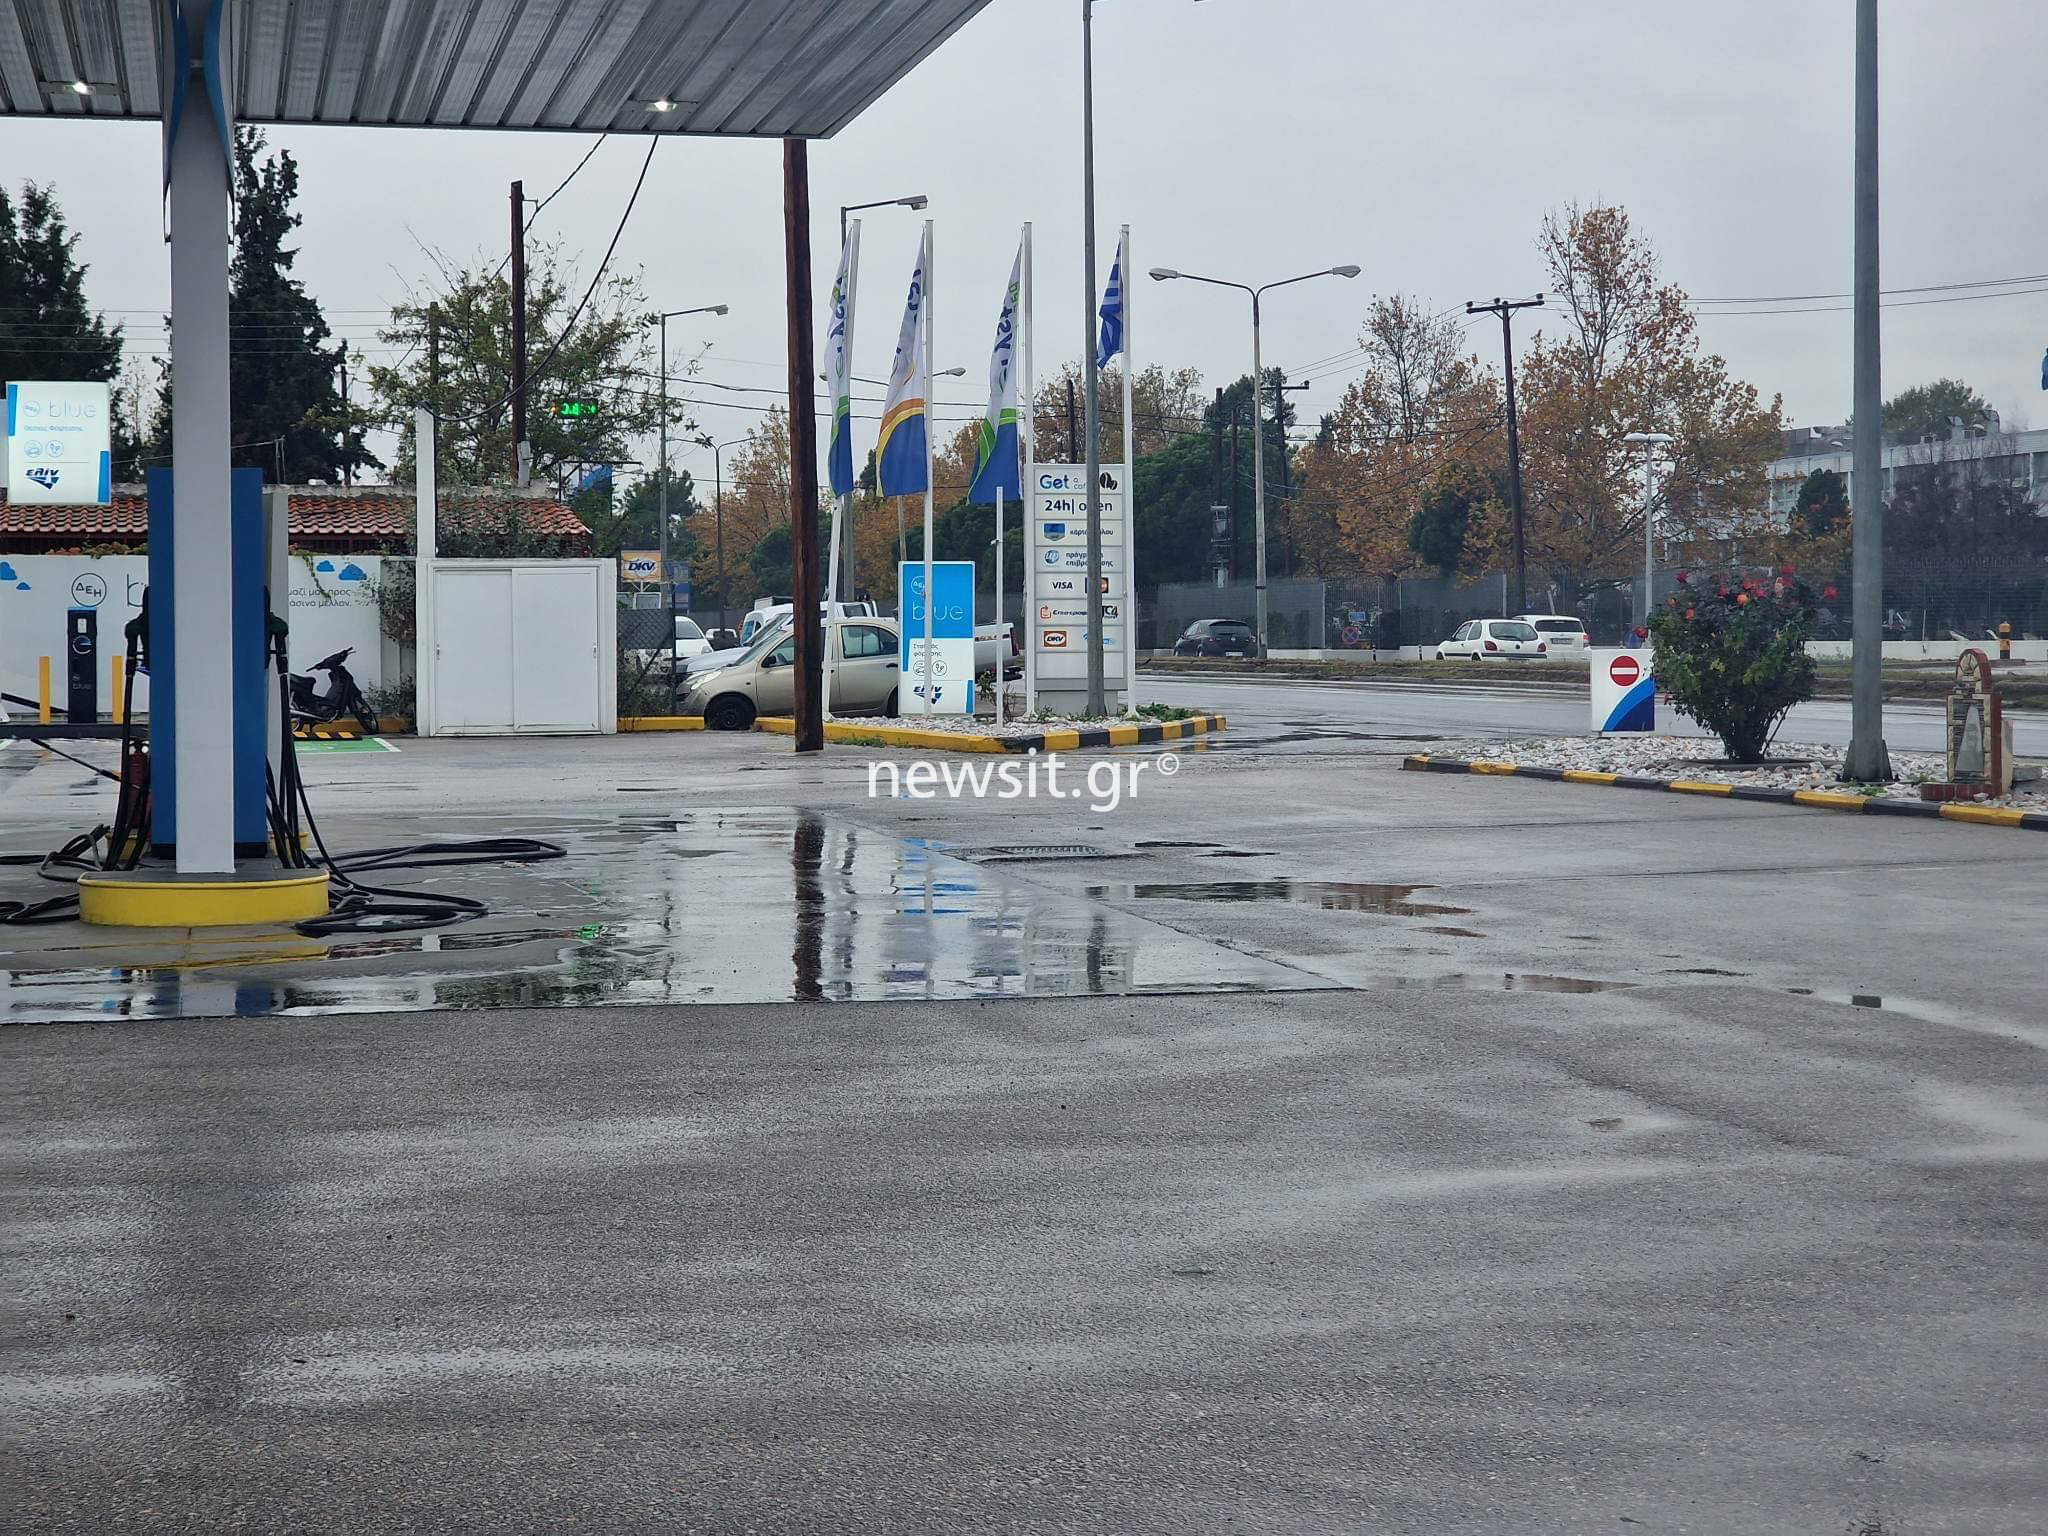 Θεσσαλονίκη: Σφαίρα στο κεφάλι δέχτηκε ο 16χρονος που προκάλεσε καταδίωξη – Έφυγε από βενζινάδικο χωρίς να πληρώσει